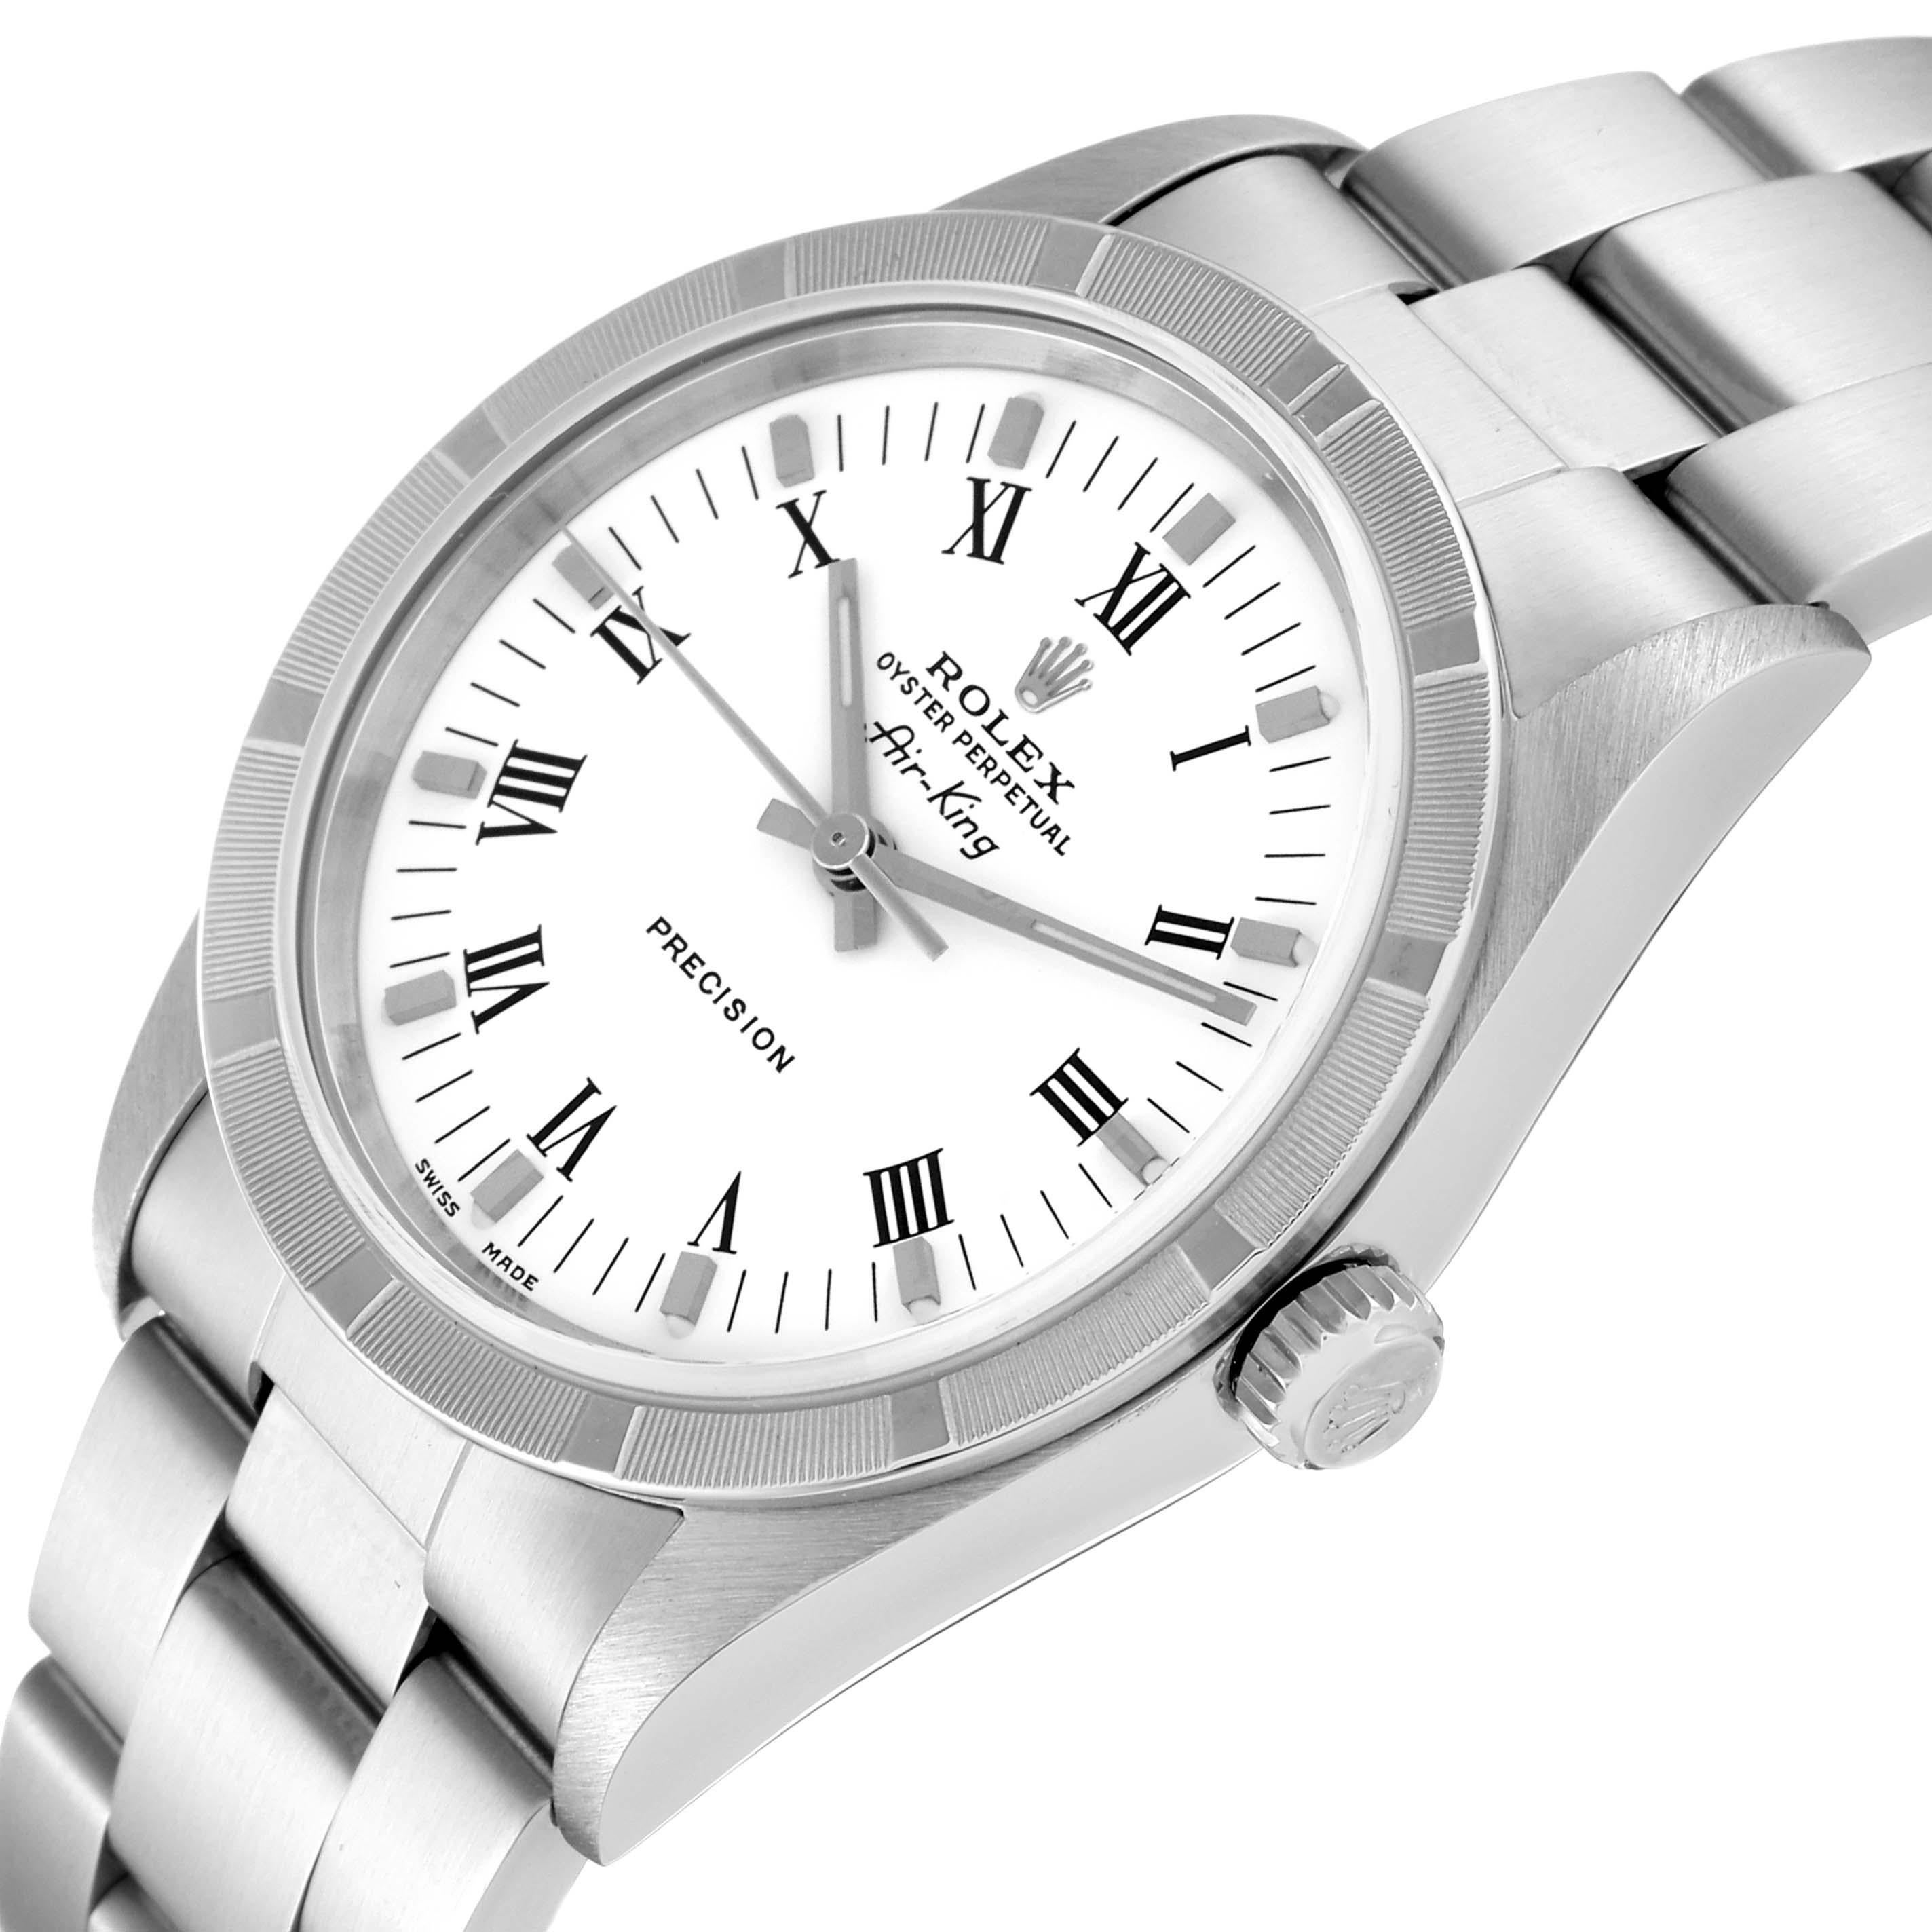 Rolex Air King 34mm weißes römisches Zifferblatt Stahl Herrenuhr 14010. Automatisches Uhrwerk mit Selbstaufzug. Gehäuse aus Edelstahl mit einem Durchmesser von 34.0 mm. Rolex Logo auf einer Krone. Gedrehte Lünette aus Edelstahl. Kratzfestes